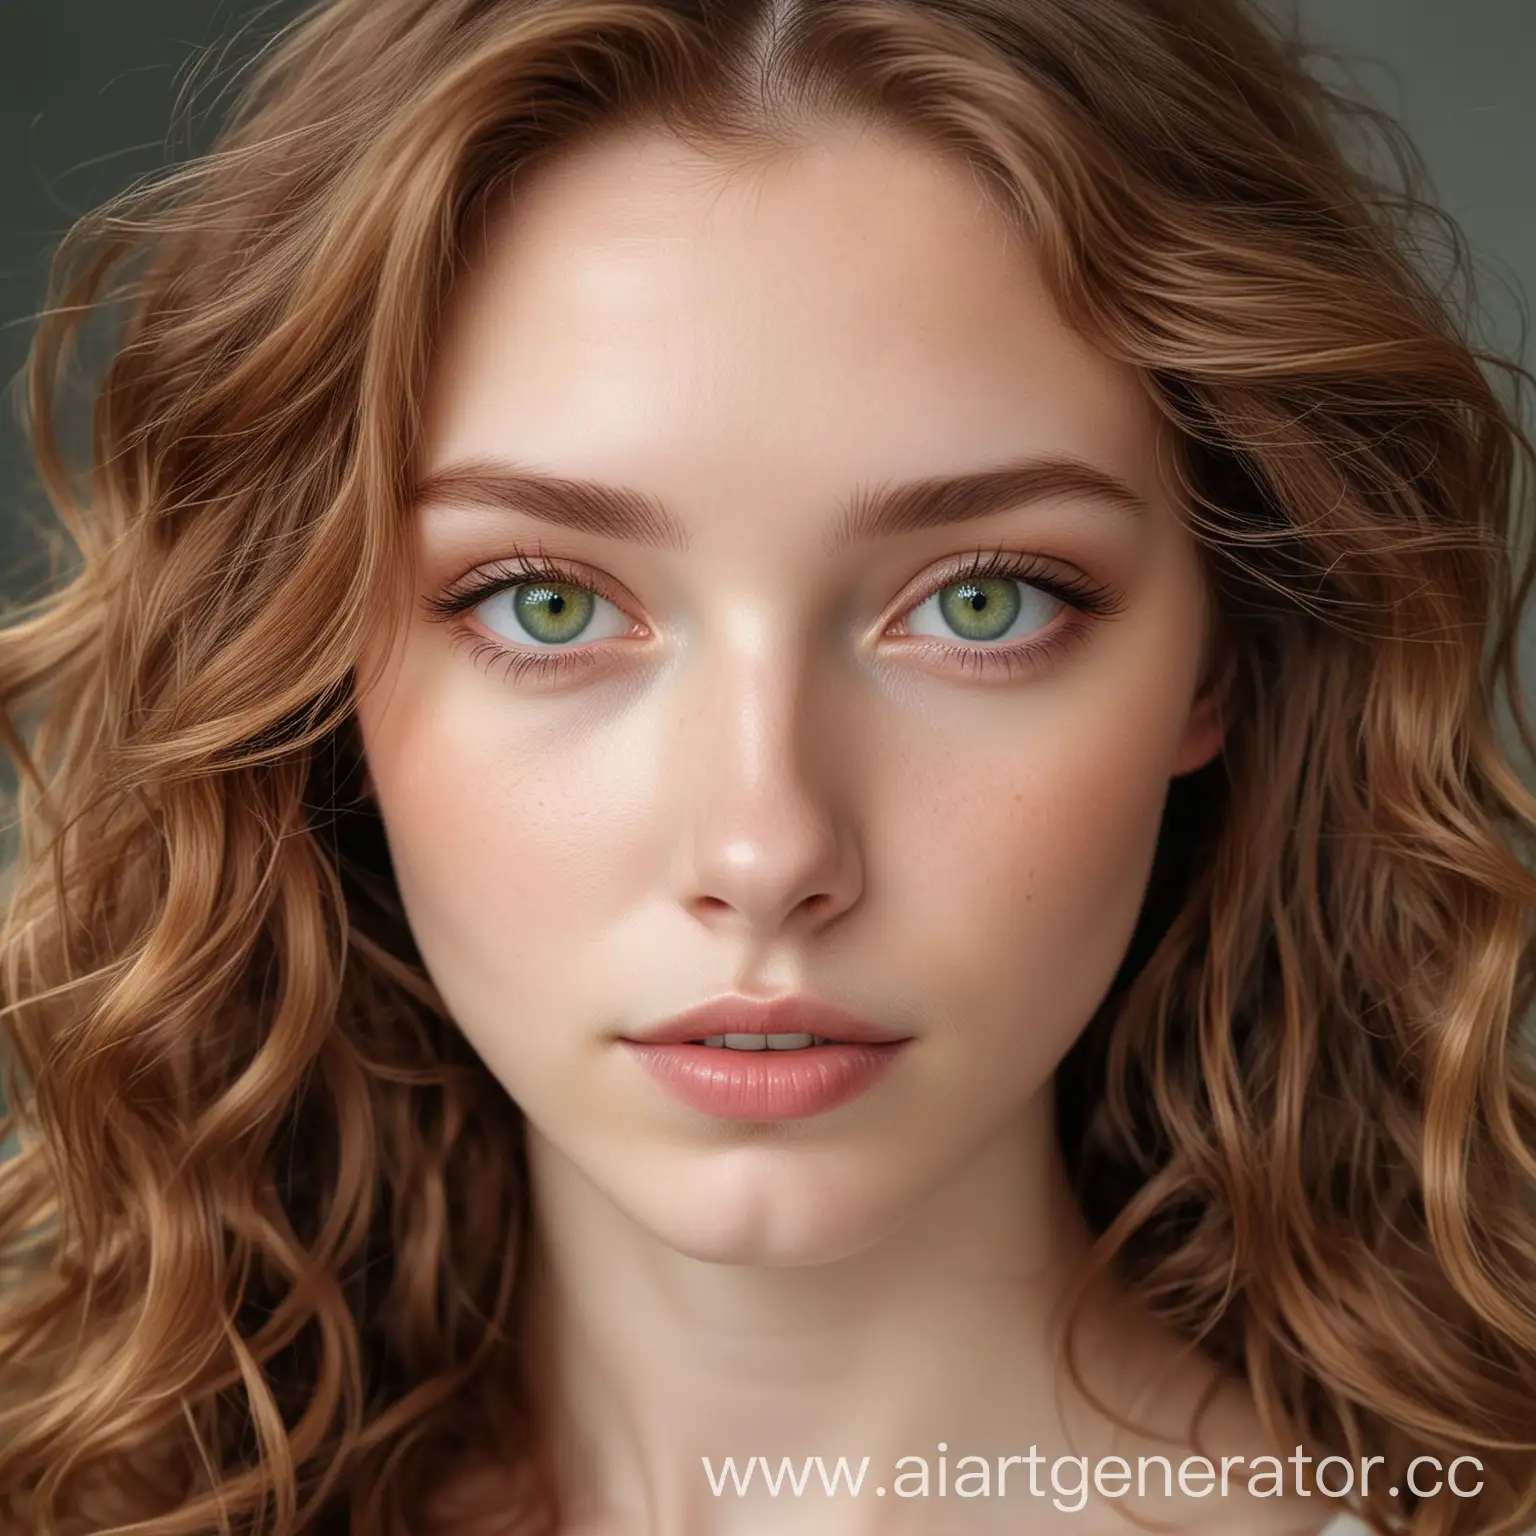 Девушка с каштановыми волнистыми волосами, бледной кожей и зелёными глазами, смотрит прямо